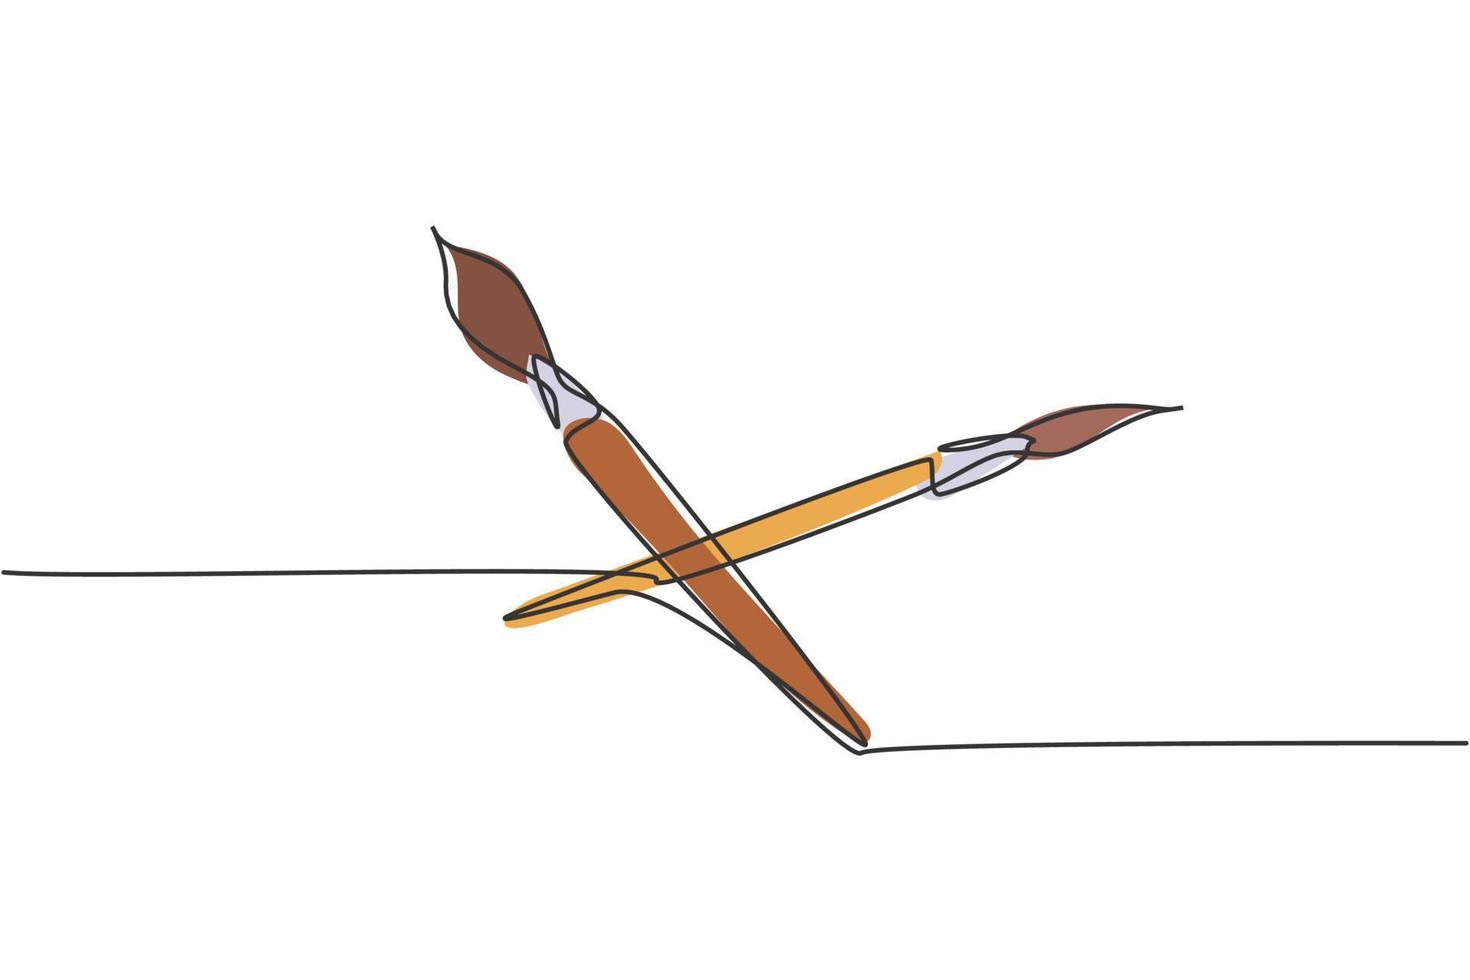 einzelne einzeilige Zeichnung eines Paarpinsels für den Zeichenunterricht mit Aquarell. zurück zu schule minimalistisch, bildungskonzept. kontinuierliche einfache linie zeichnen stil design grafische vektorillustration vektor